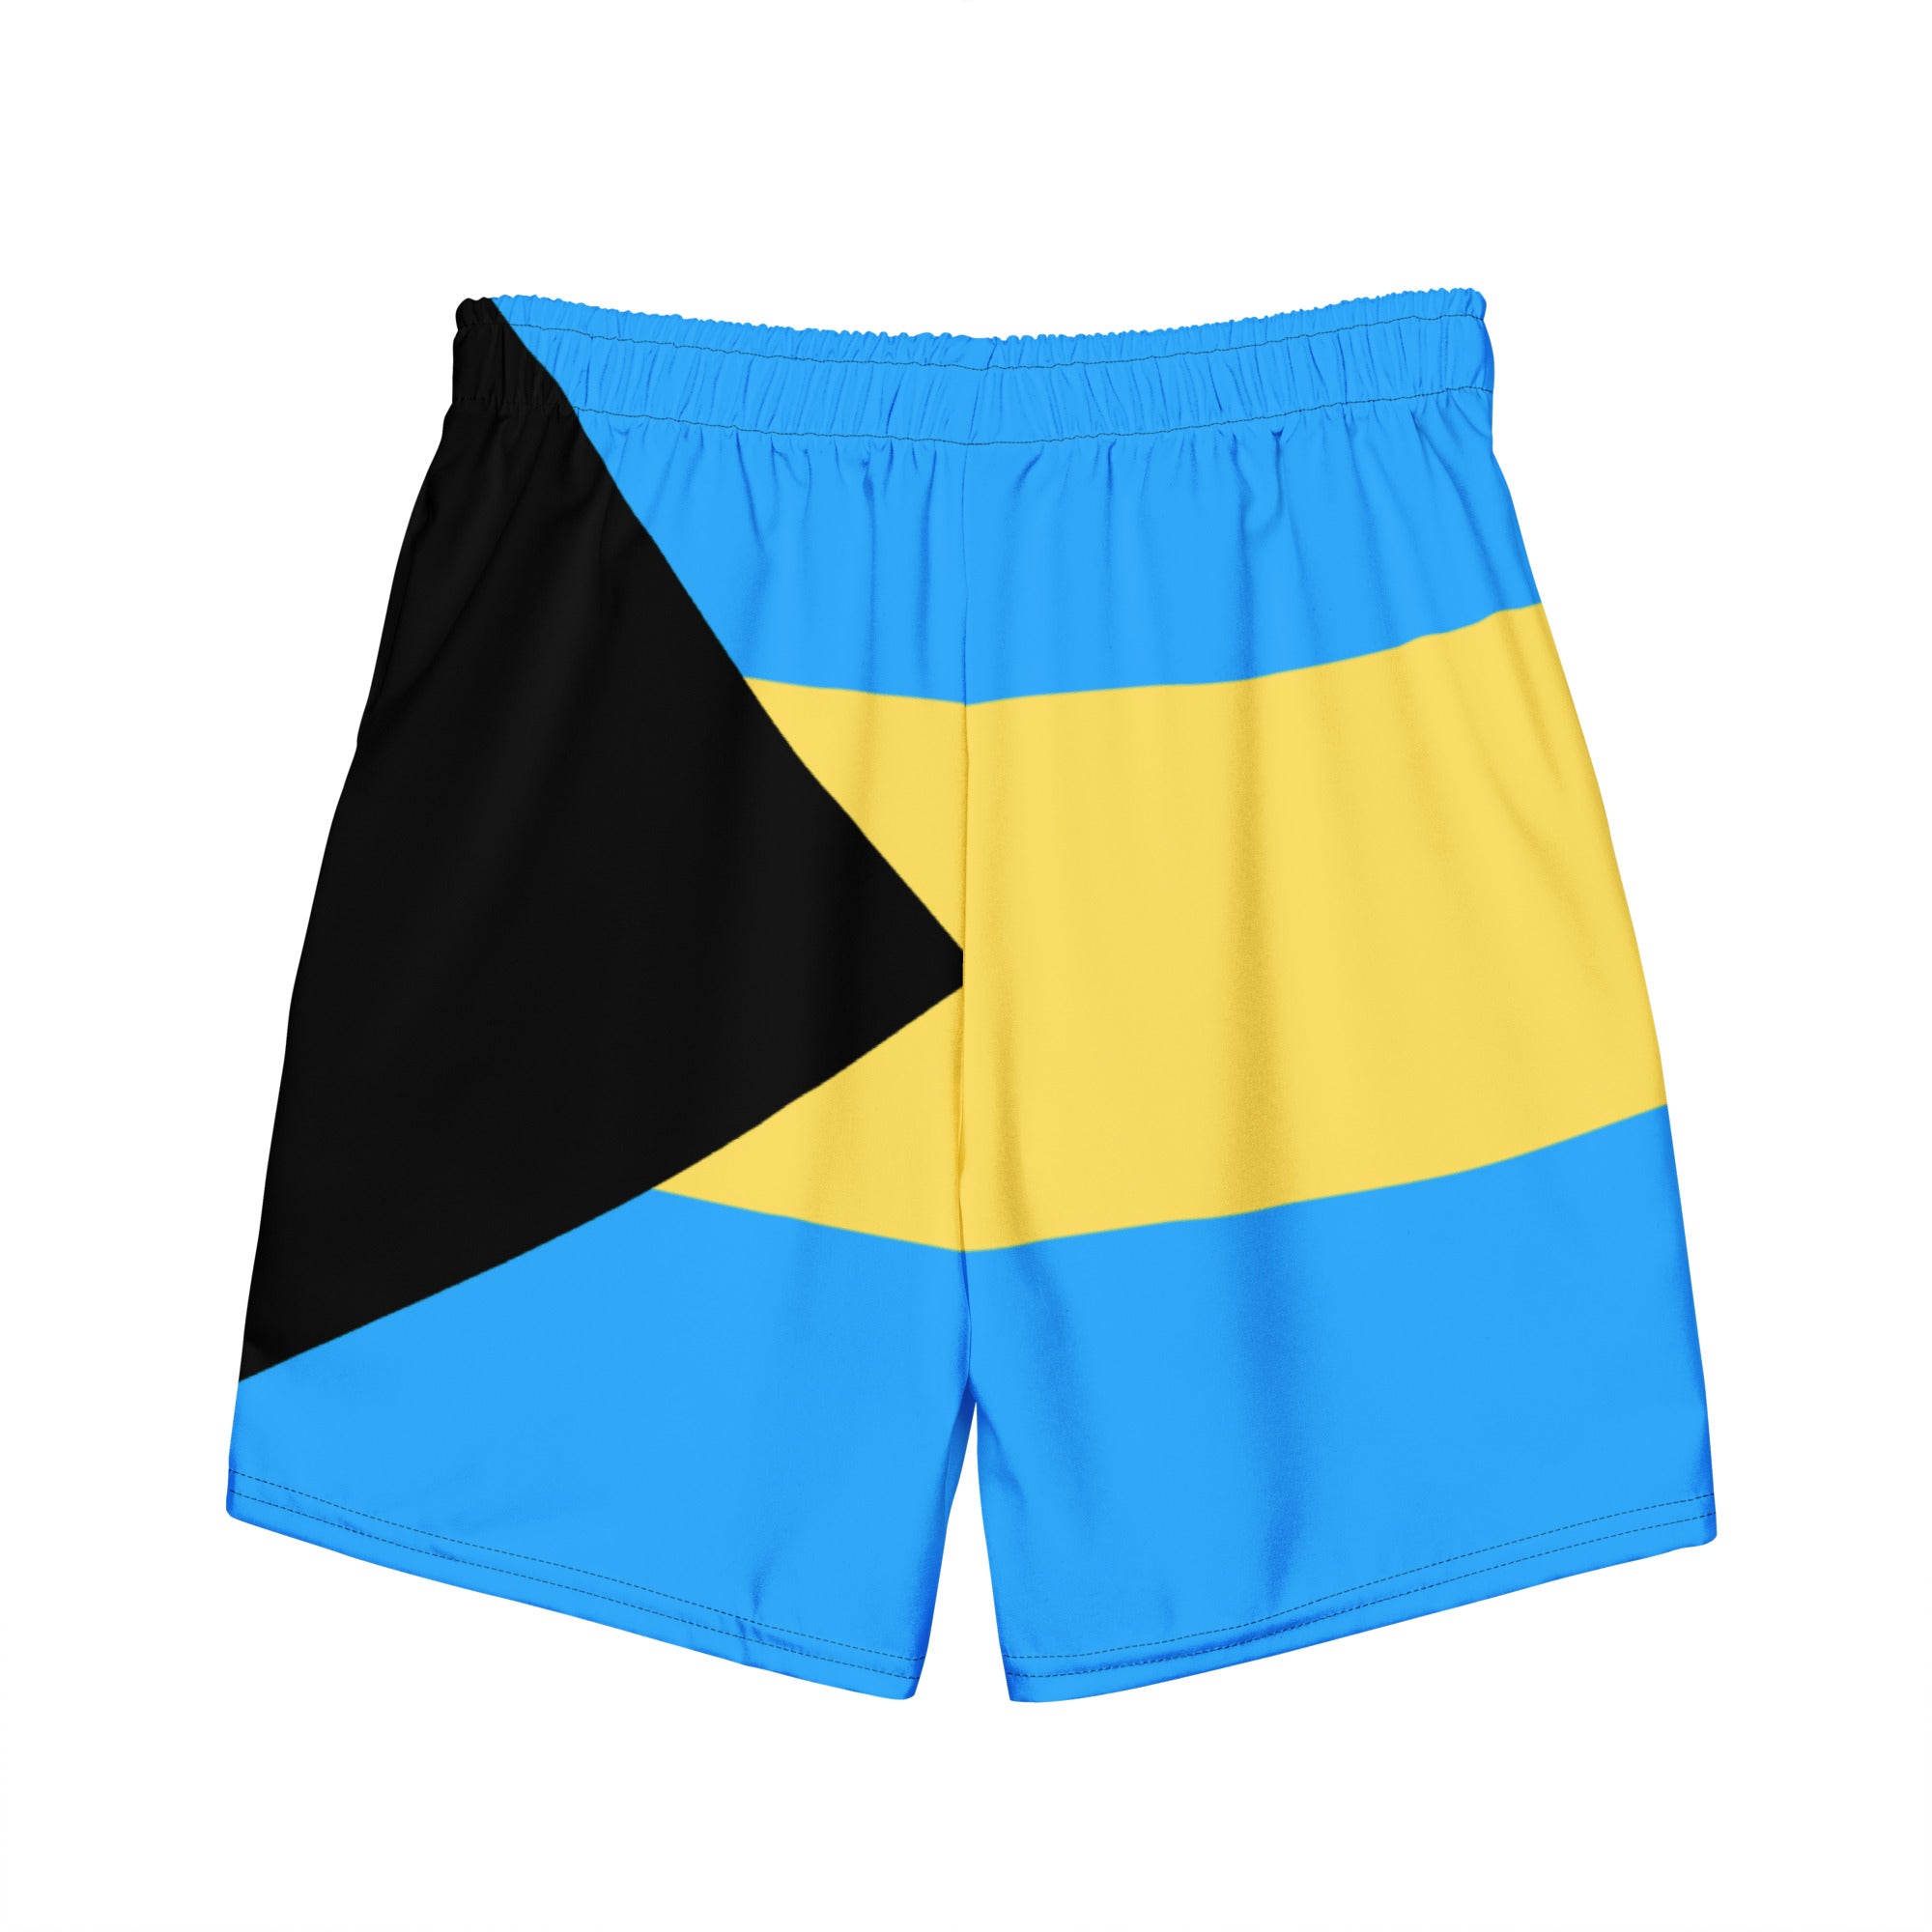 Bahamas Flag - Men's swim trunks